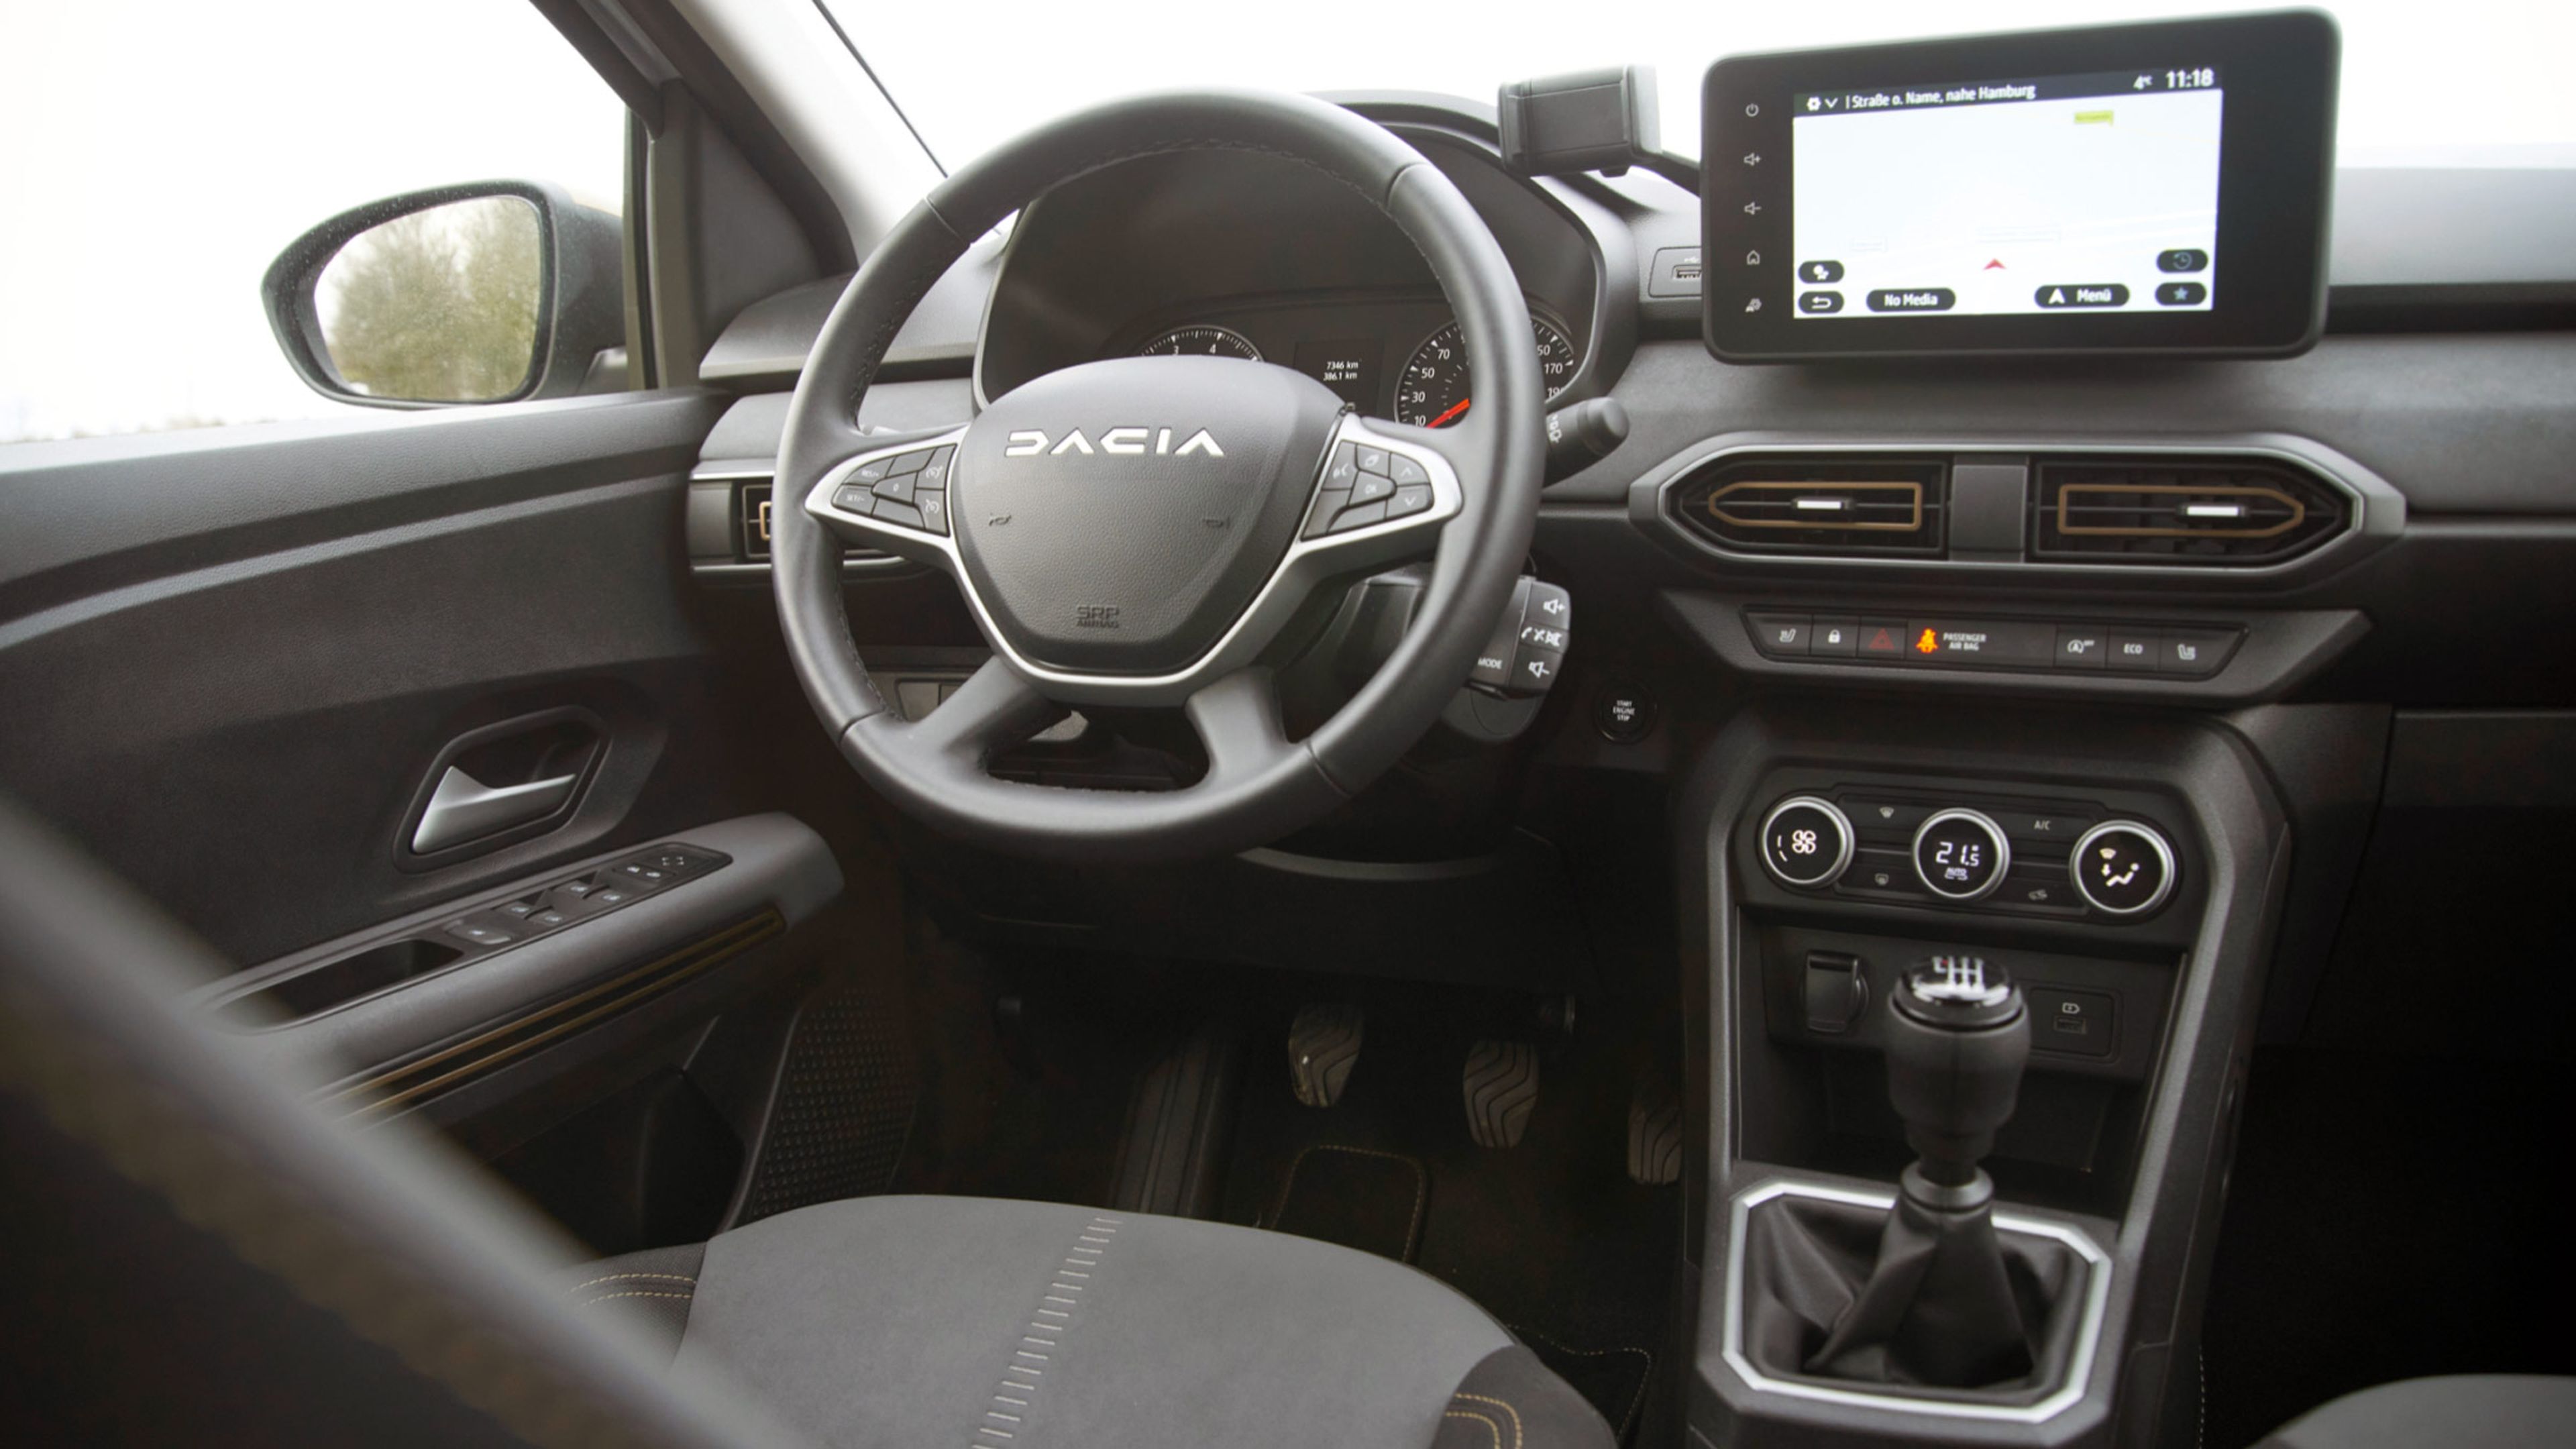 Dacia Sandero cockpit